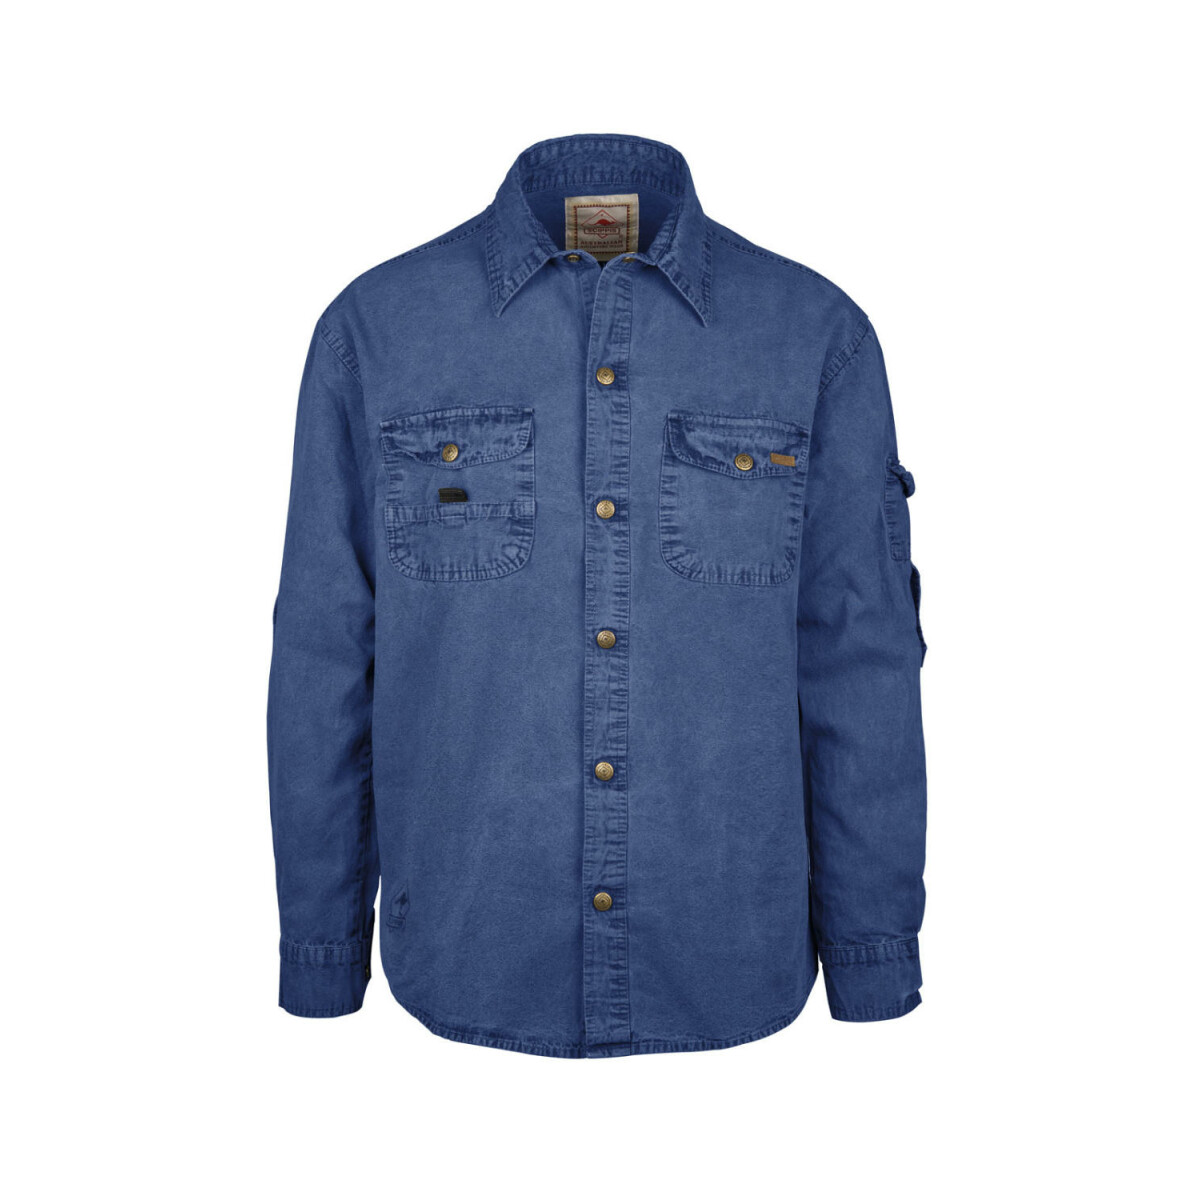 Scippis Outdoorhemd Herrenhemd Freizeithemd -Cowra- denim blue-3XL von Scippis